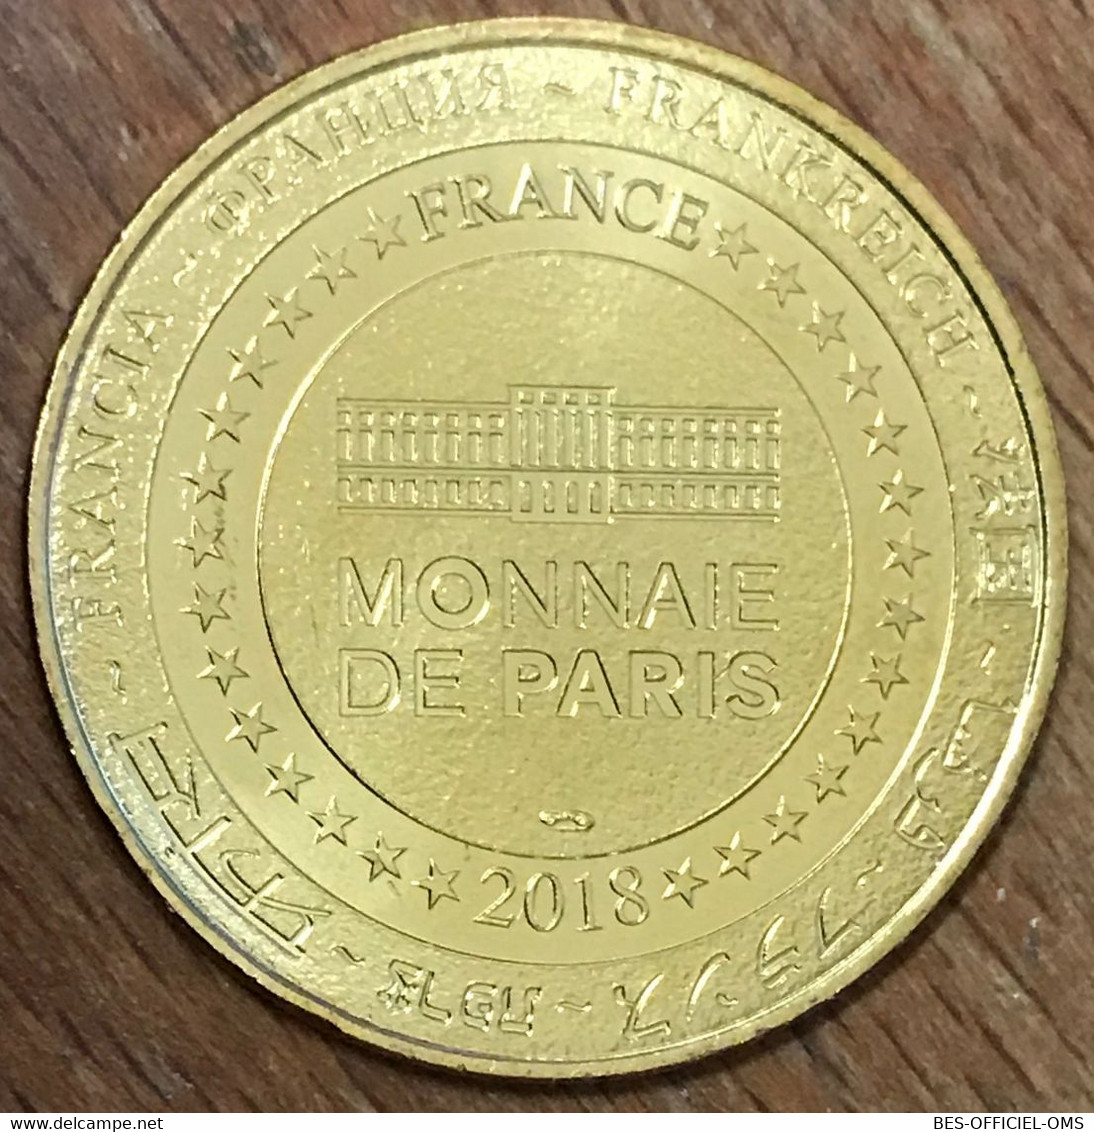 67 MÉMORIAL SCHIRMECK ALSACE MOSELLE MDP 2018 MÉDAILLE SOUVENIR MONNAIE DE PARIS JETON TOURISTIQUE MEDALS COINS TOKENS - 2018